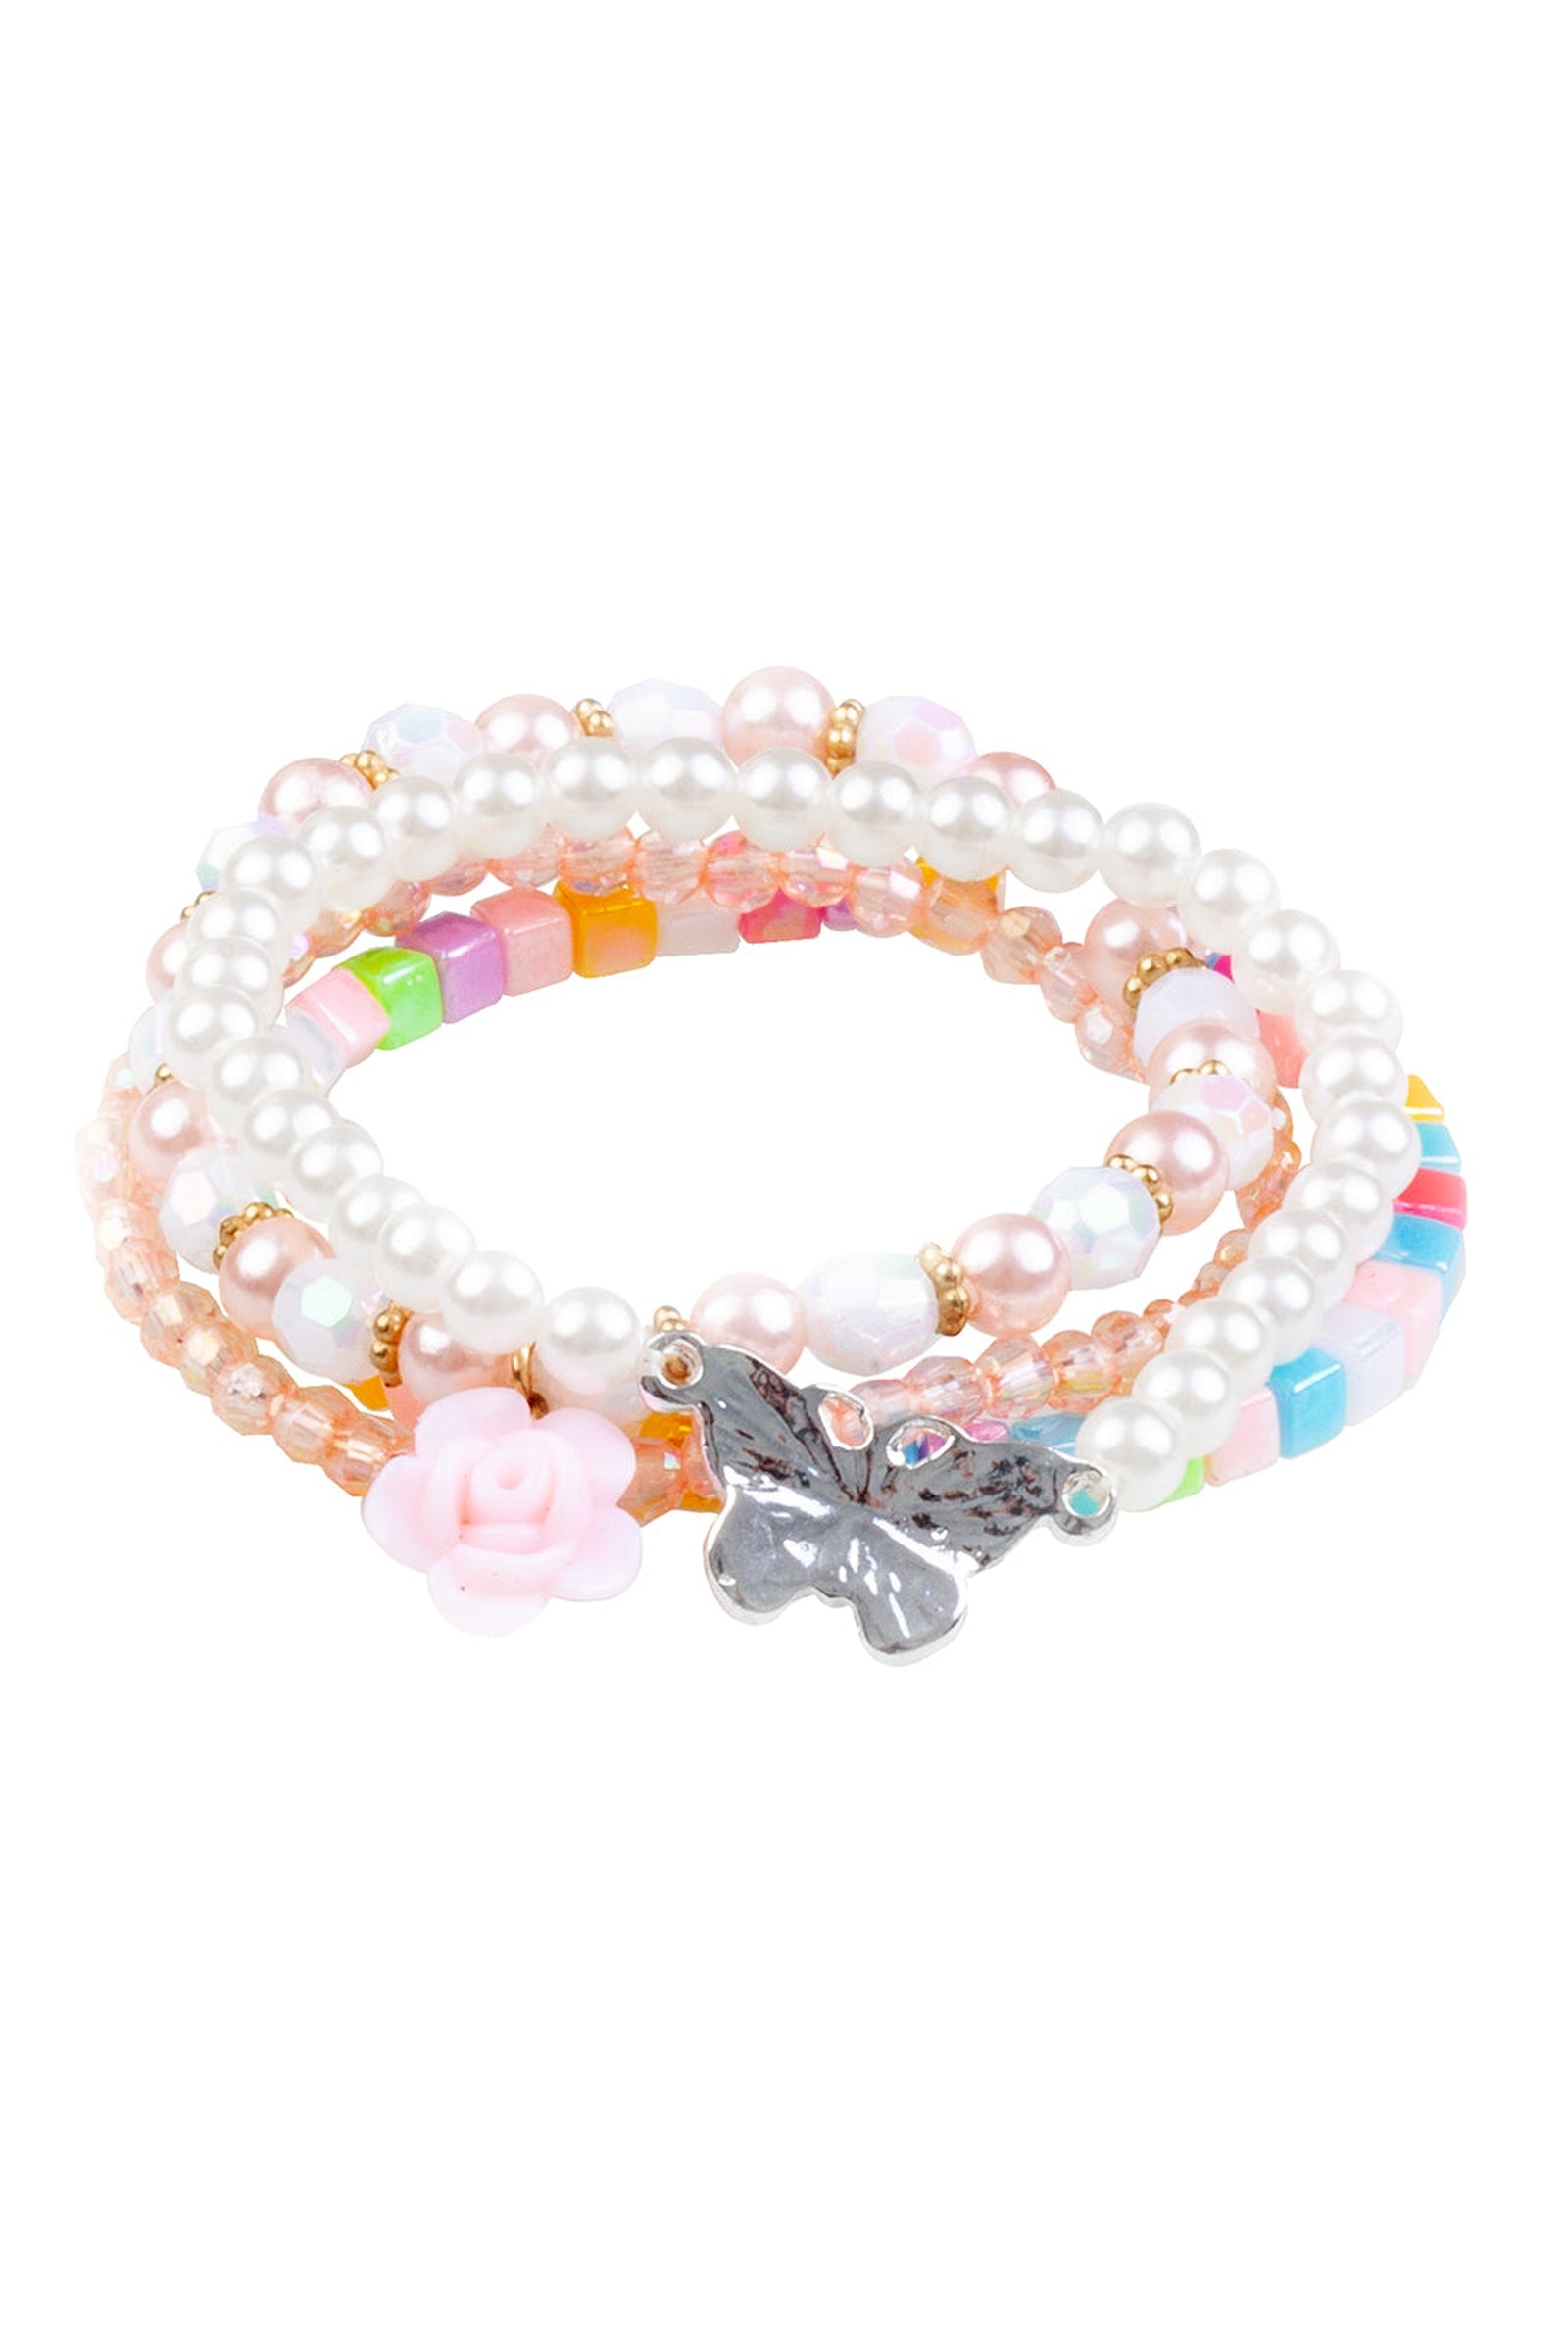 Bracelet - Sparkle Pony - coloré - bracelet enfant - bracelet